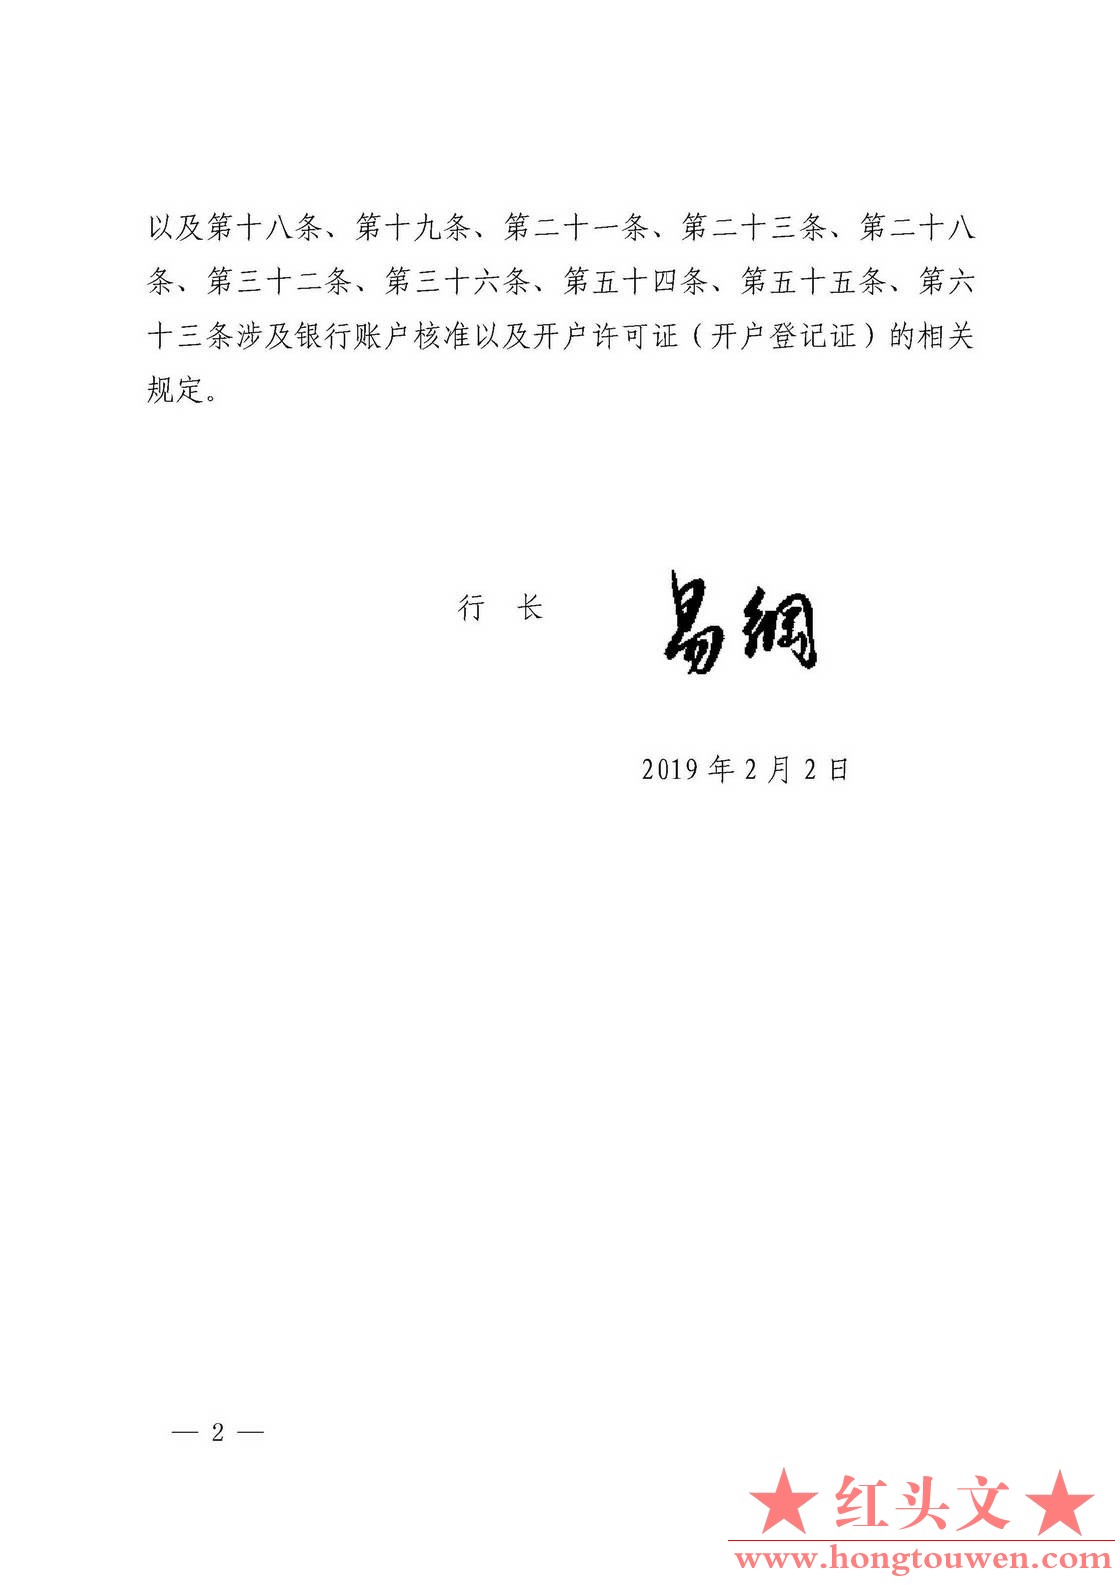 中国人民银行令[2019]1号-取消银行账户许可_页面_2.jpg